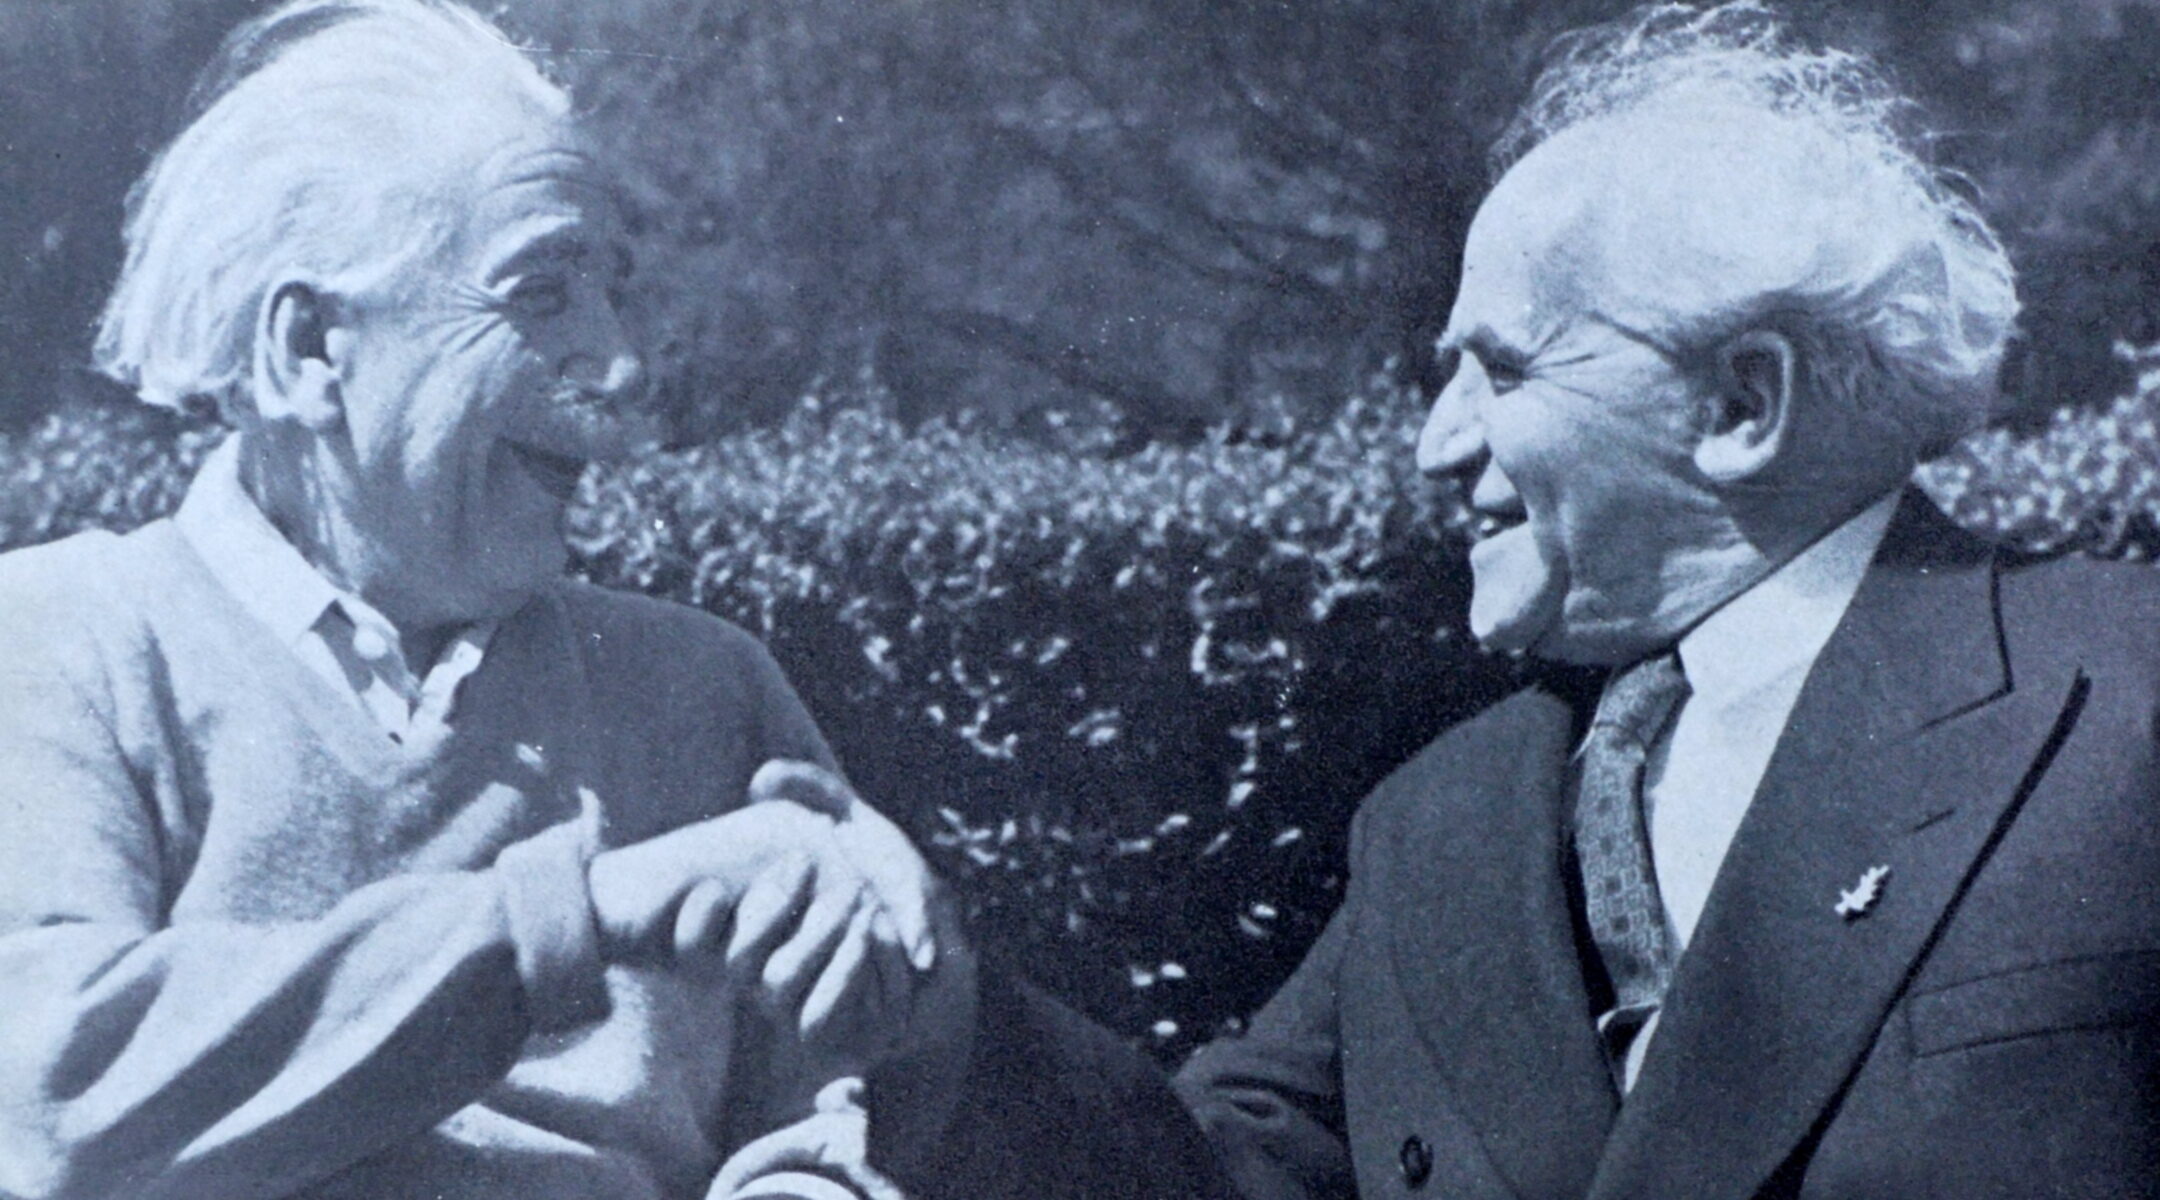 Albert Einstein sitting with David Ben-Gurion